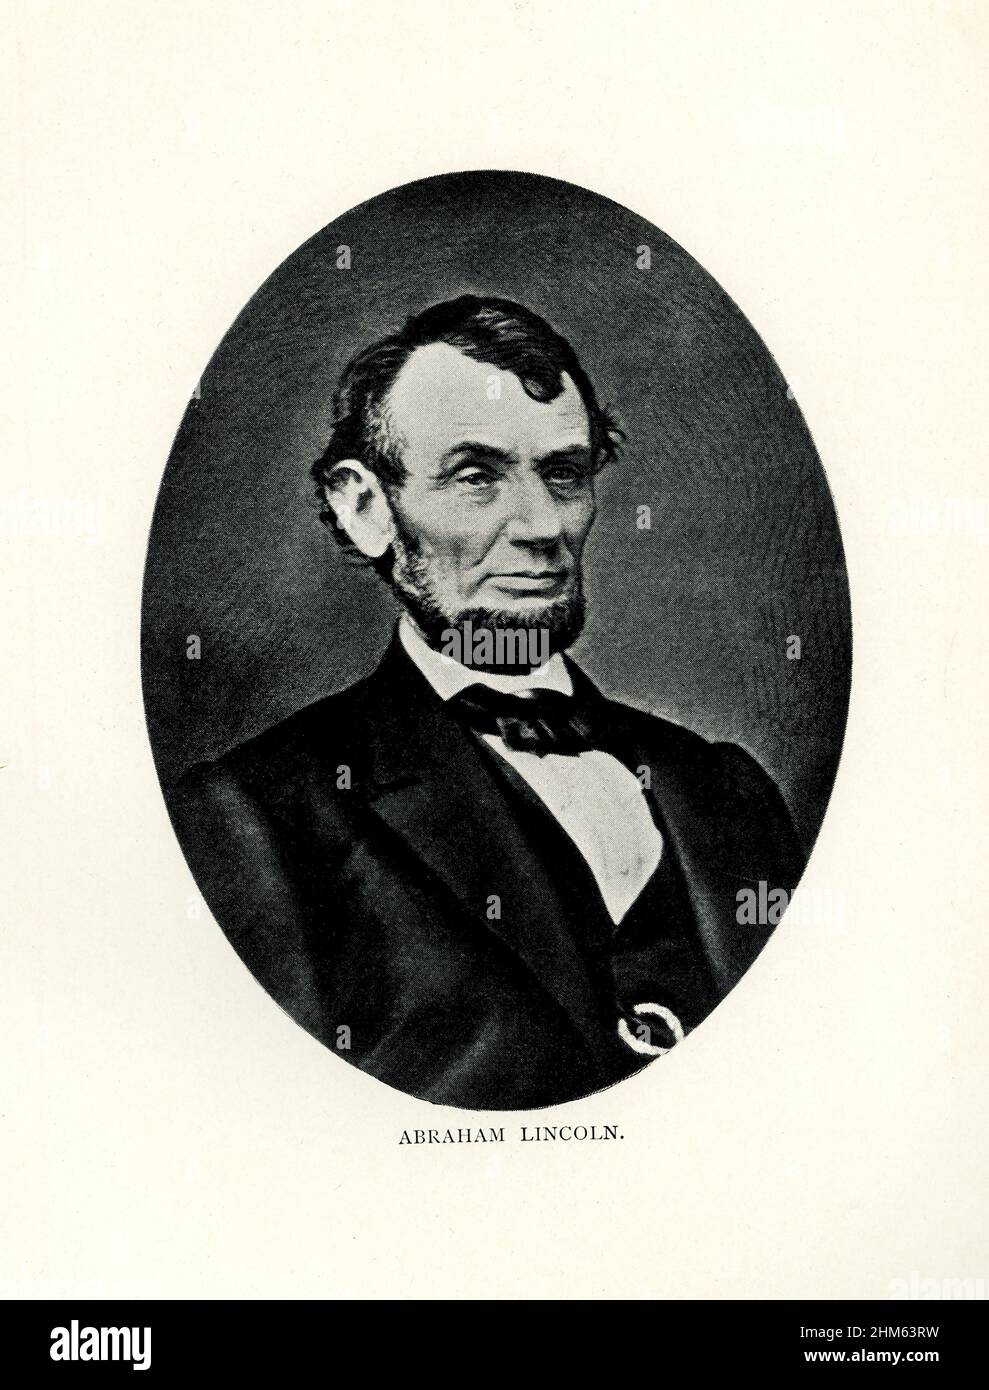 Abraham Lincoln était le président des États-Unis en 16th.Il a servi du 1861 mars à son assassinat le 15 avril 1865. Banque D'Images